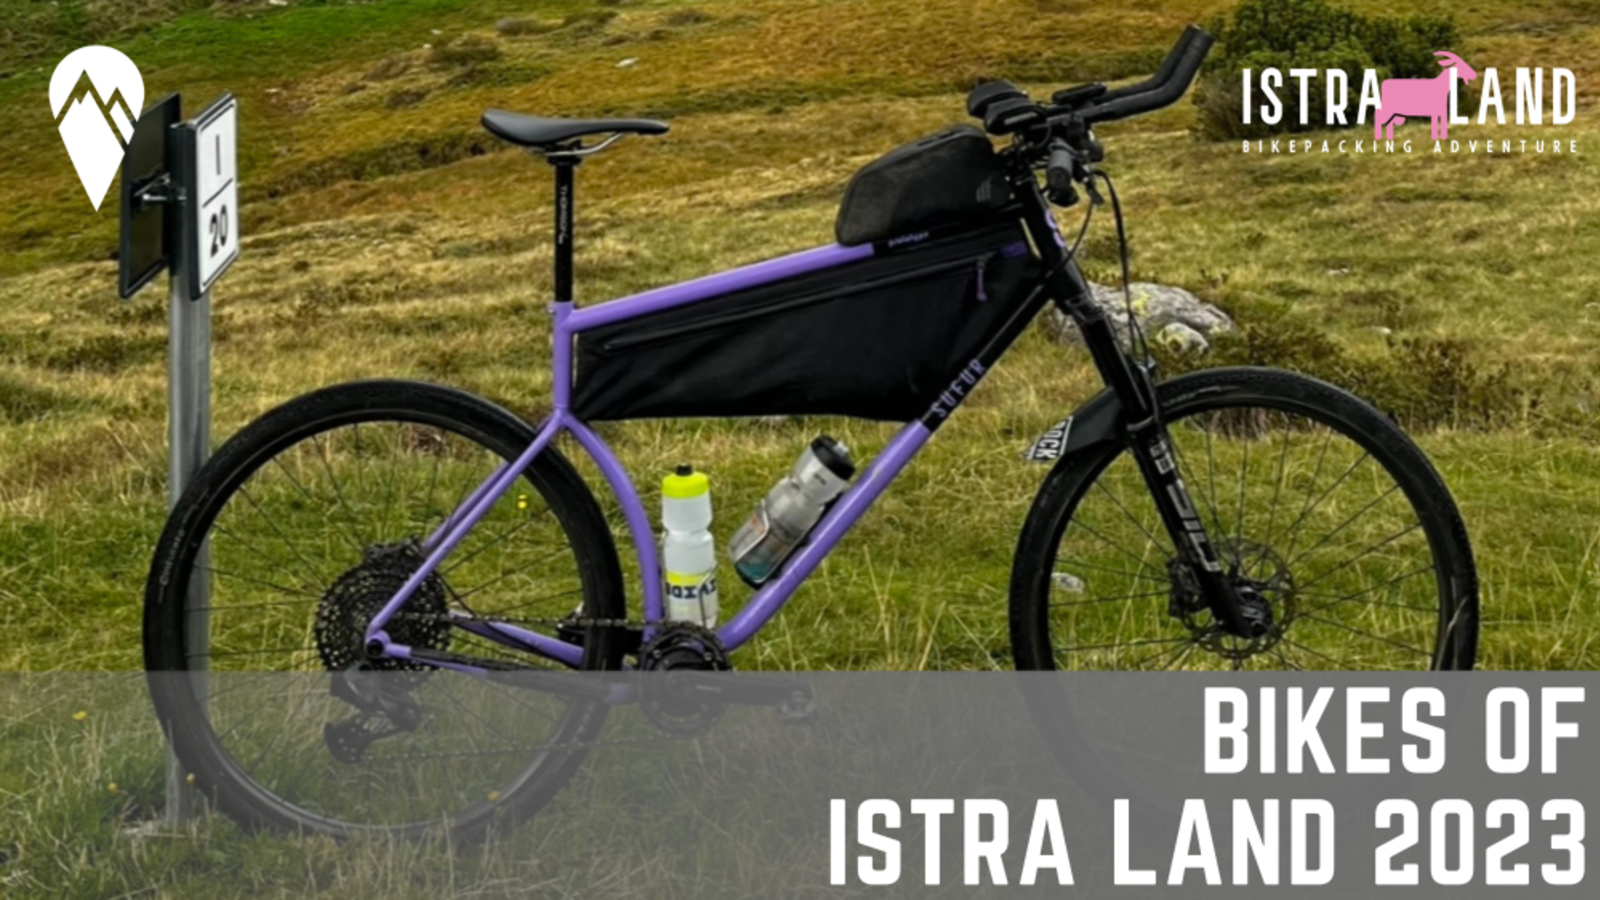 Bikes of Istra Land 2023